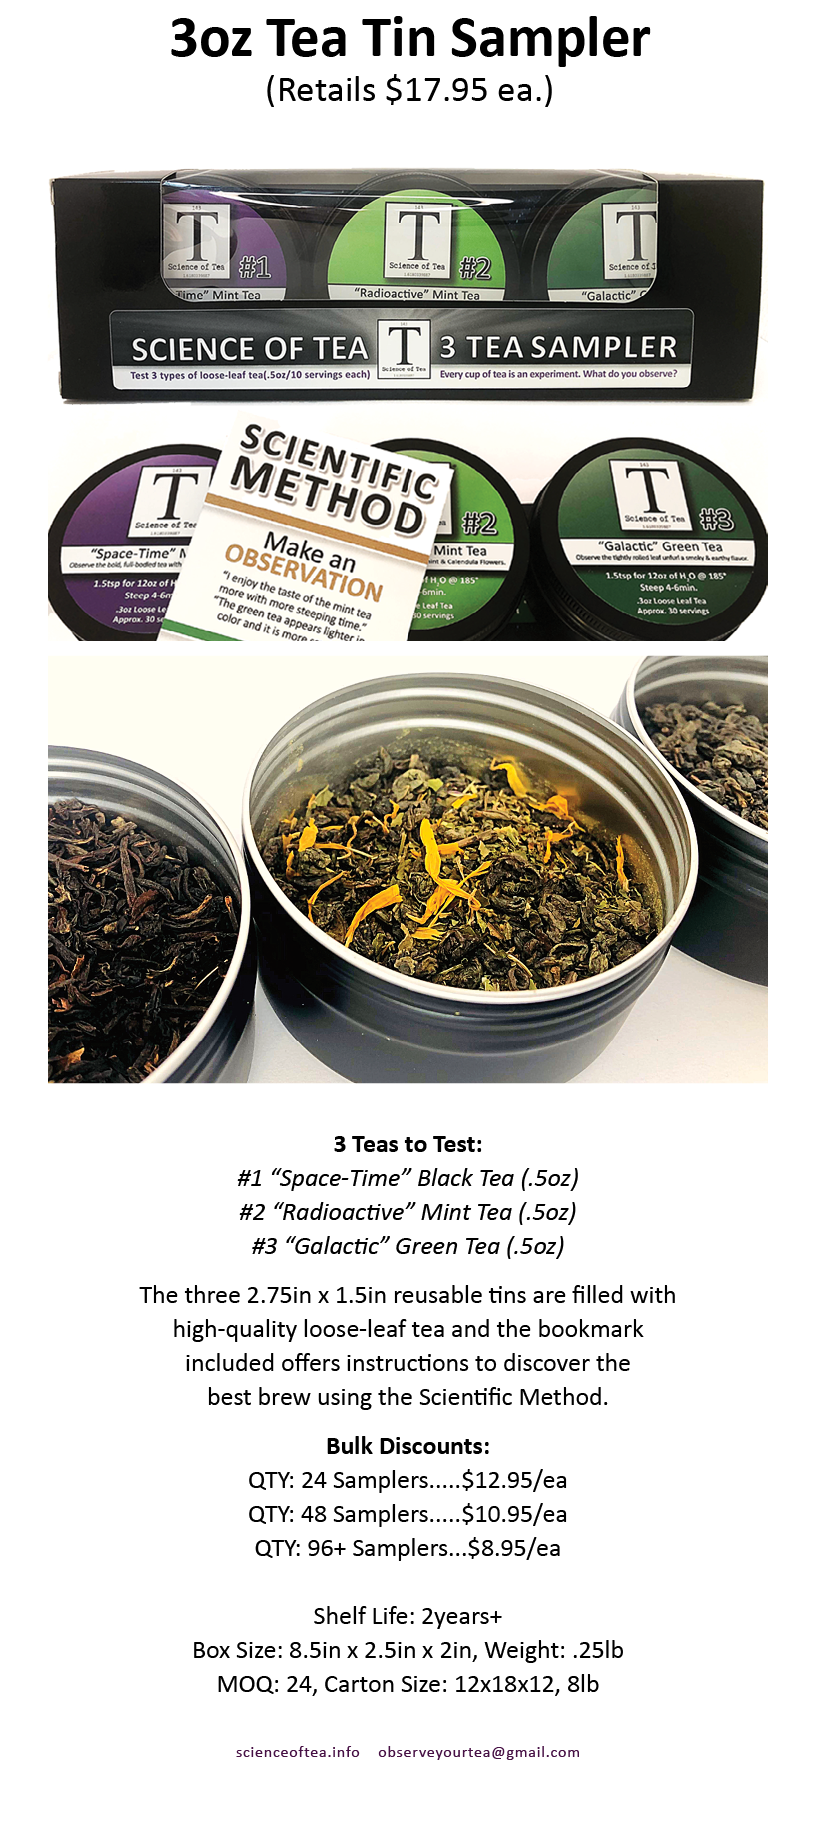 3 Tea Tin Sampler - Science of Tea